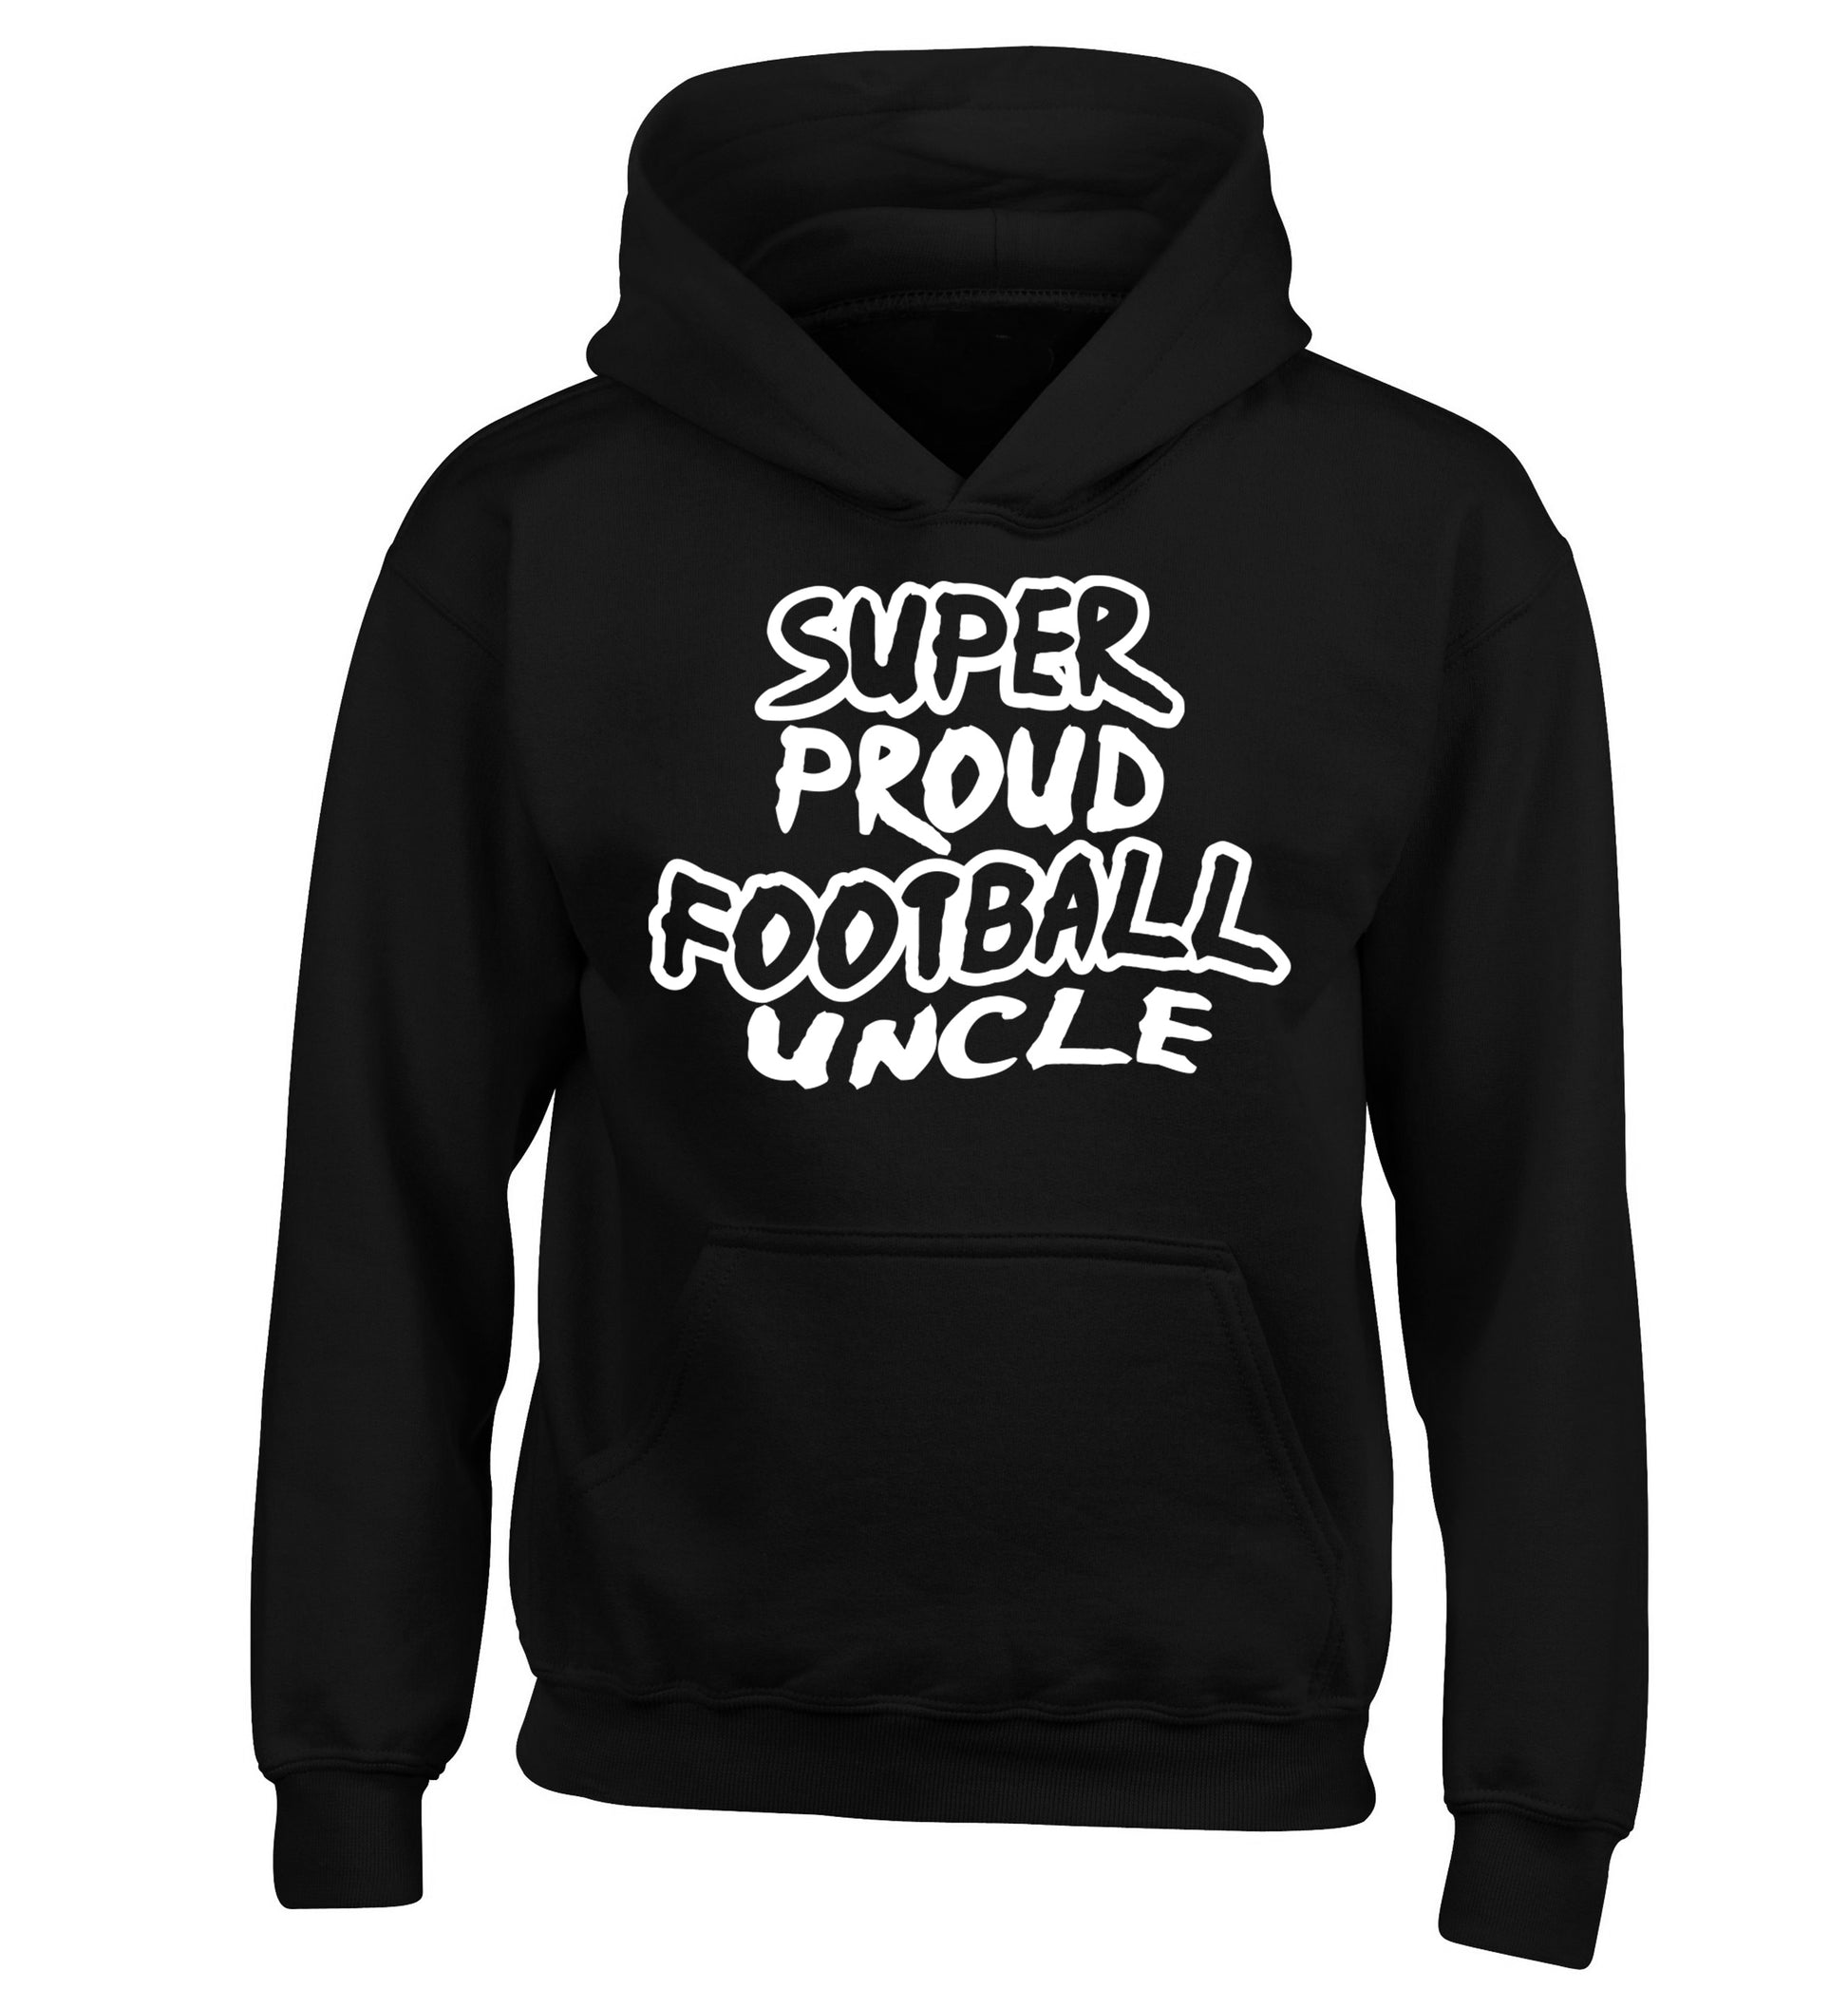 Super proud football uncle children's black hoodie 12-14 Years